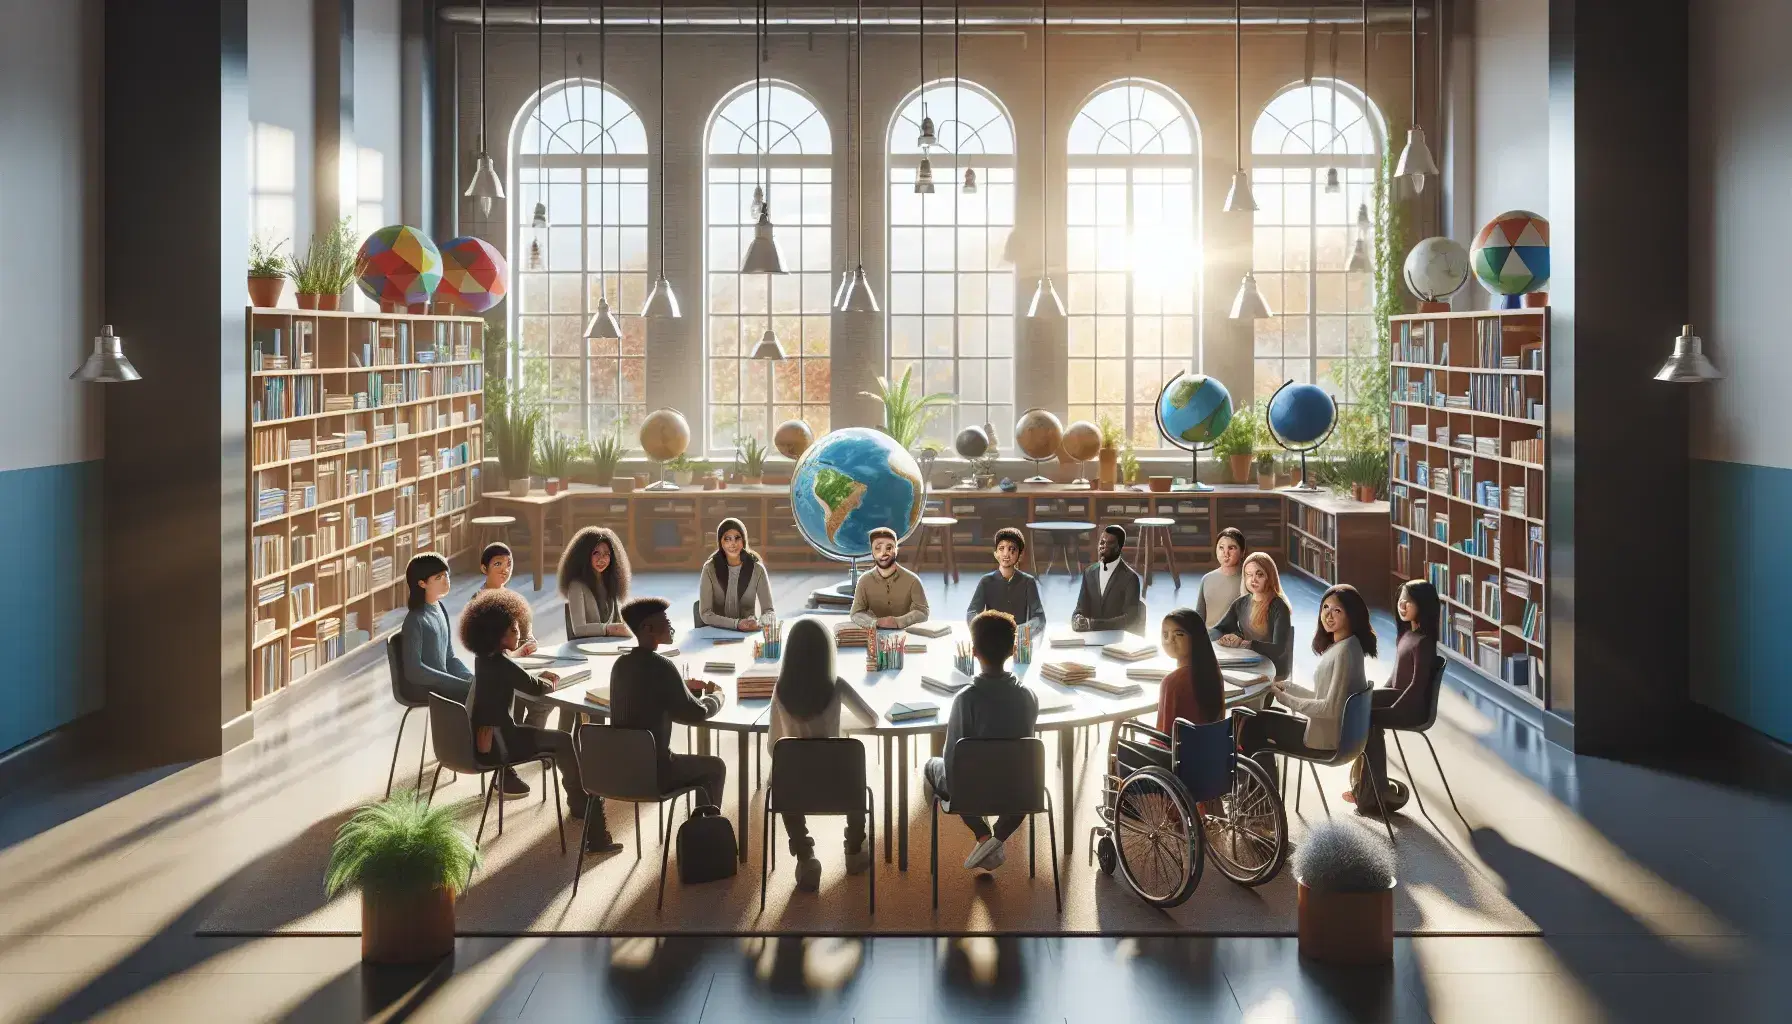 Aula escolar luminosa con estudiantes diversos sentados alrededor de una mesa redonda, incluyendo un alumno en silla de ruedas, entre estanterías con libros y materiales didácticos.